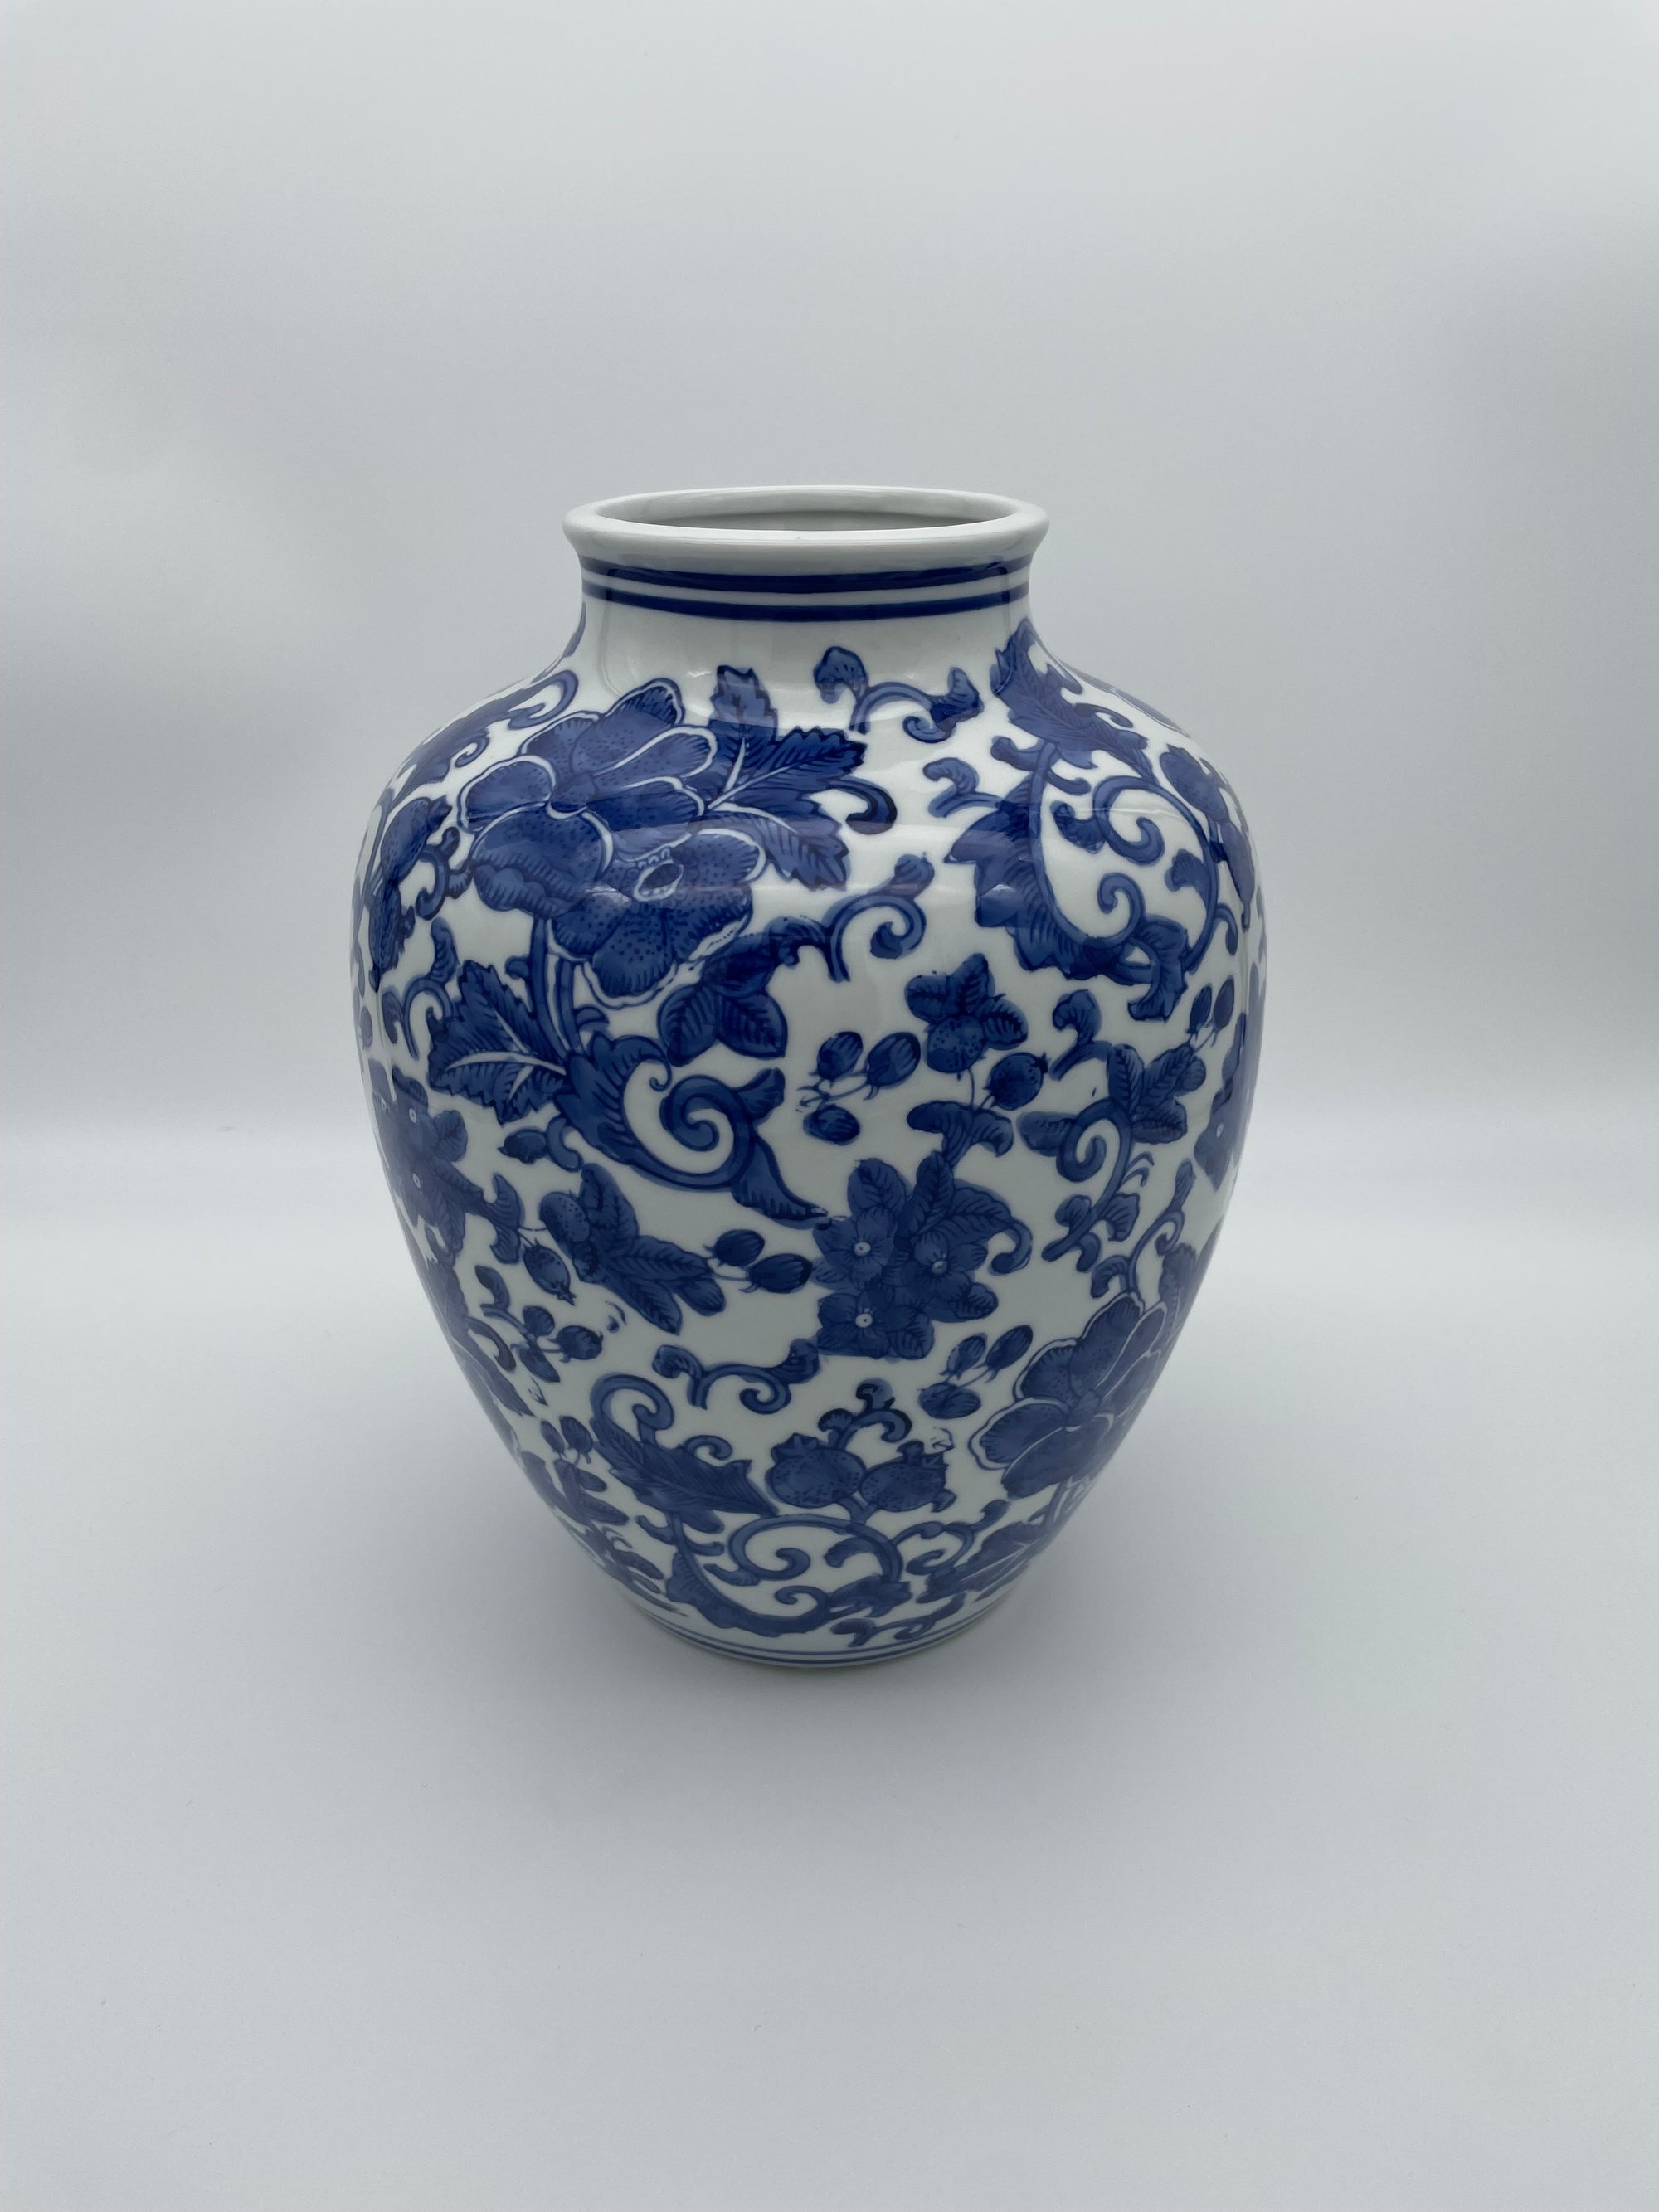 Large blue & white vase